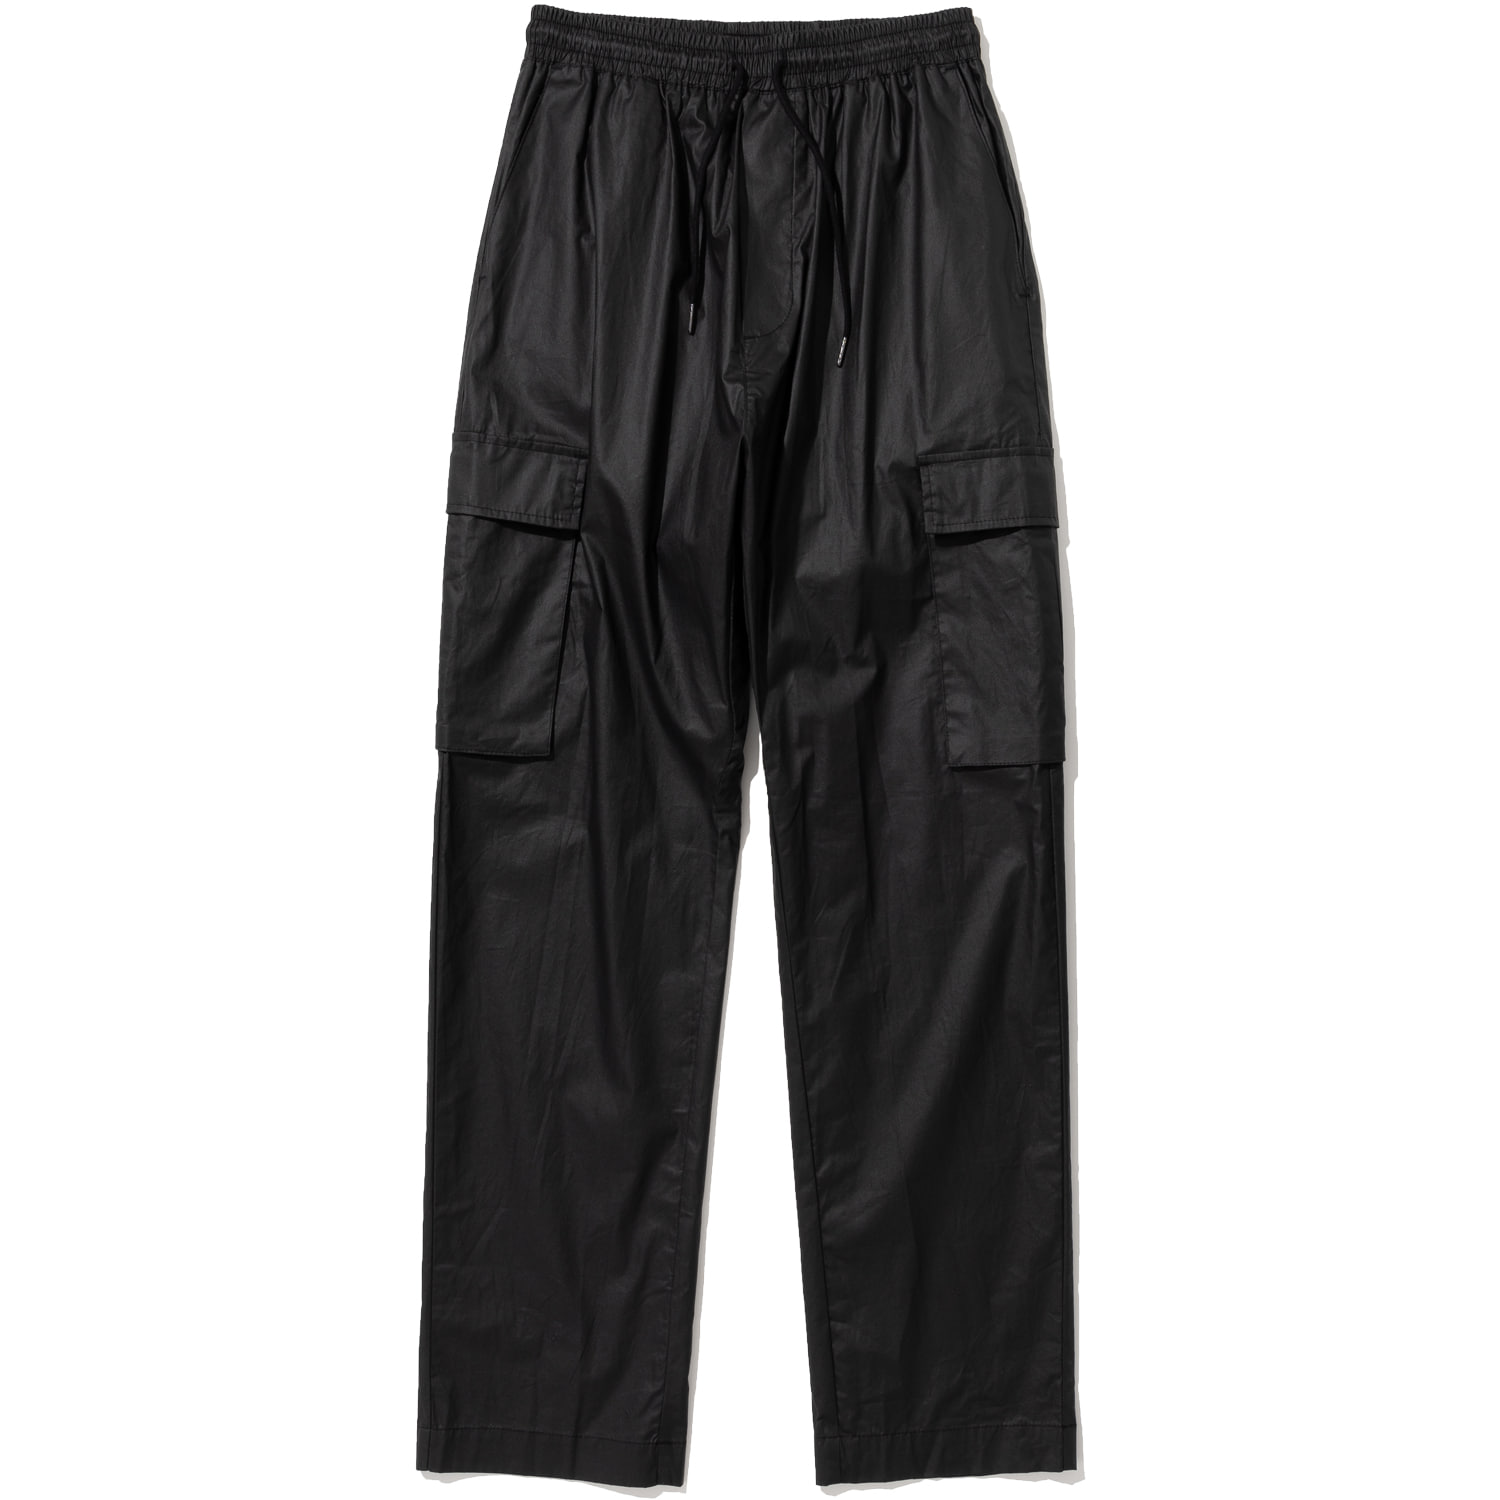 Carbon Baggy Pants - Black,NOT4NERD